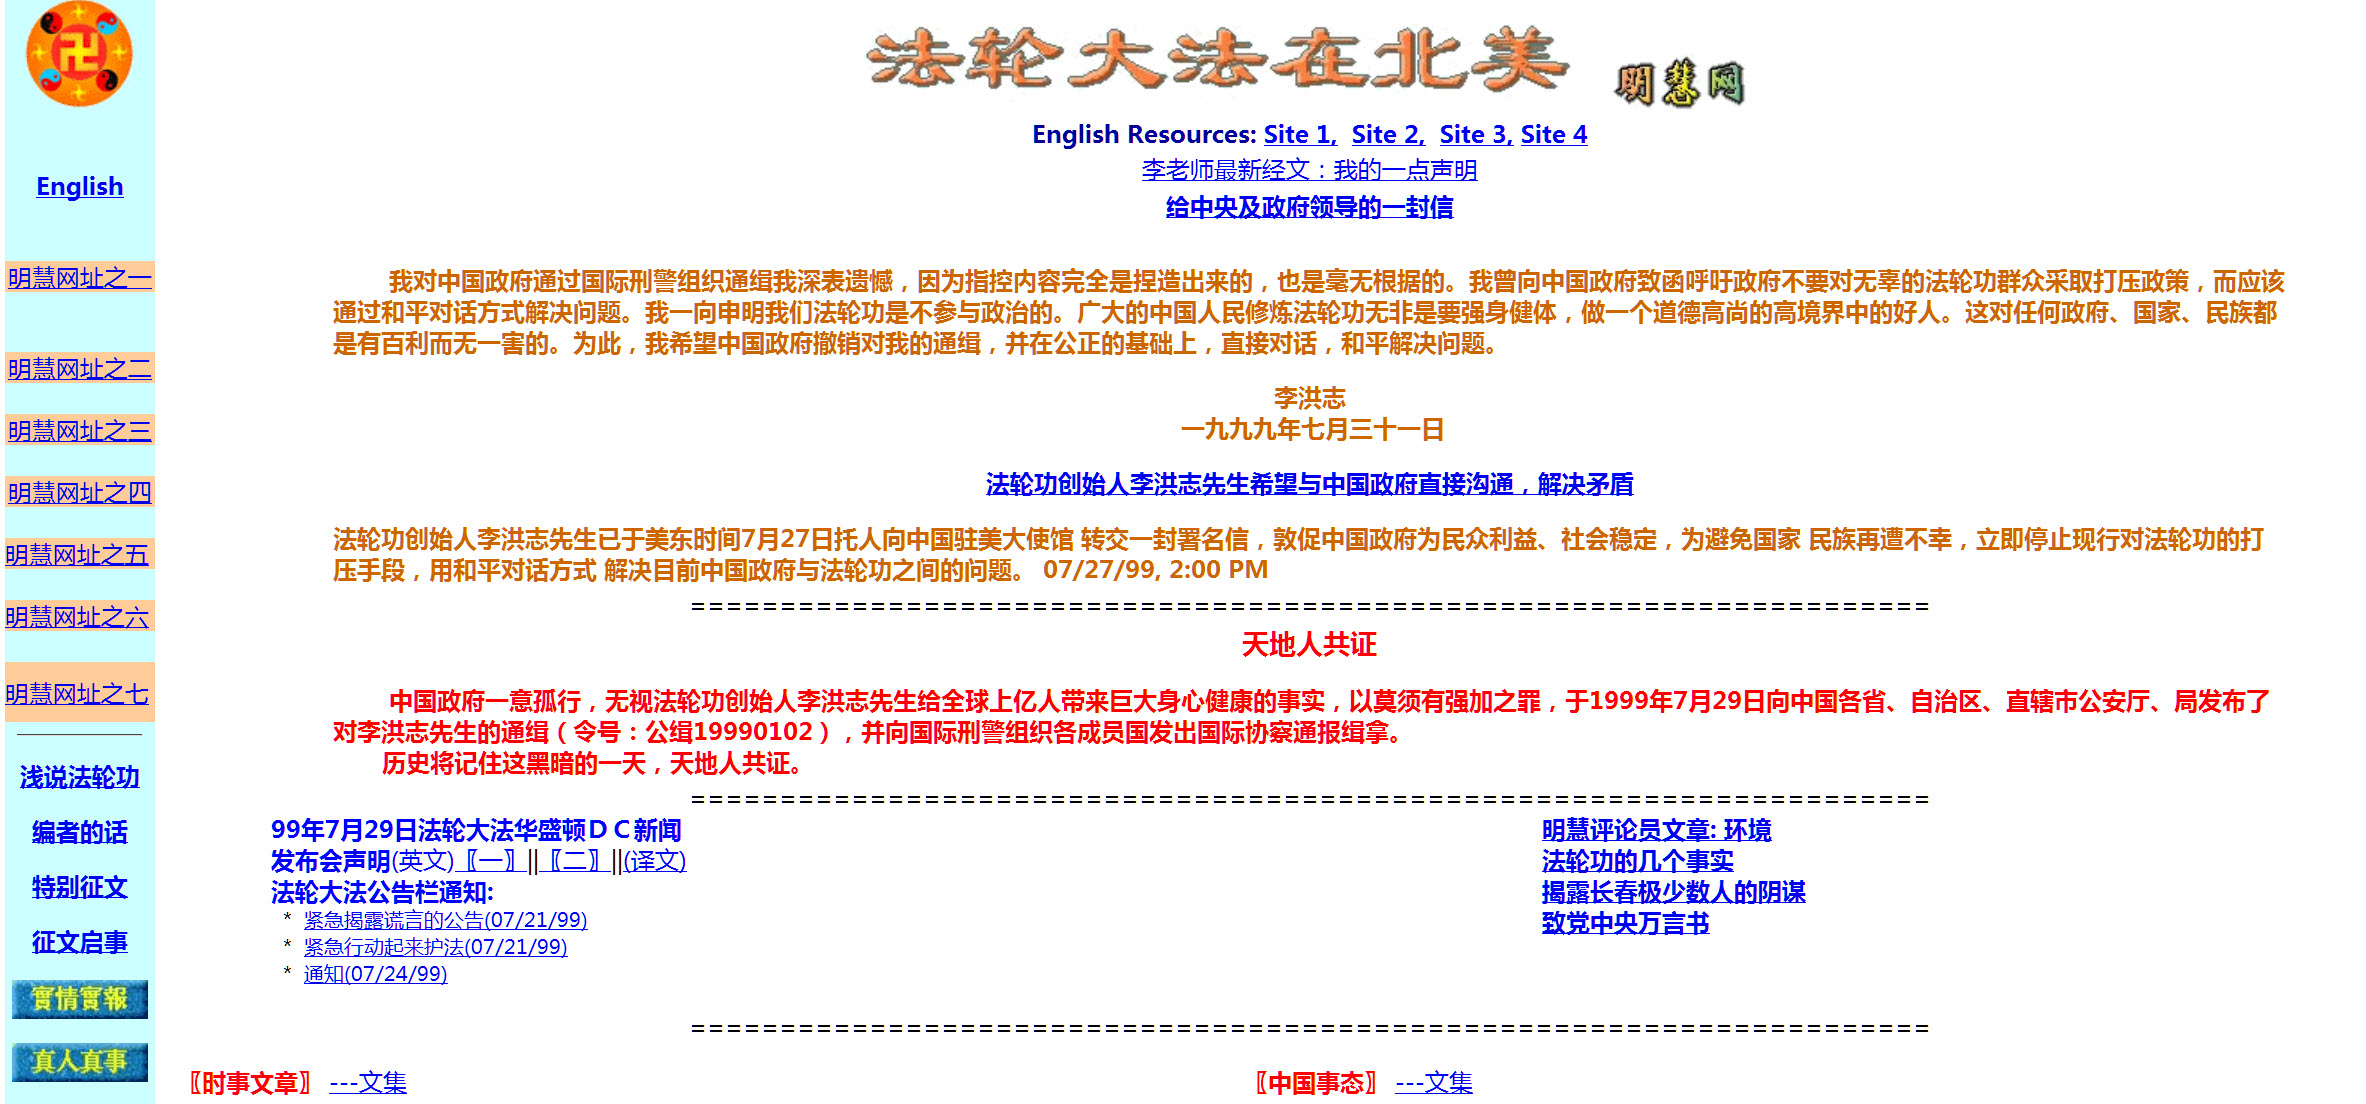 2016-7-27-minghui-falun-gong-screenshot-minghui-homepage-1999_large-size.jpg